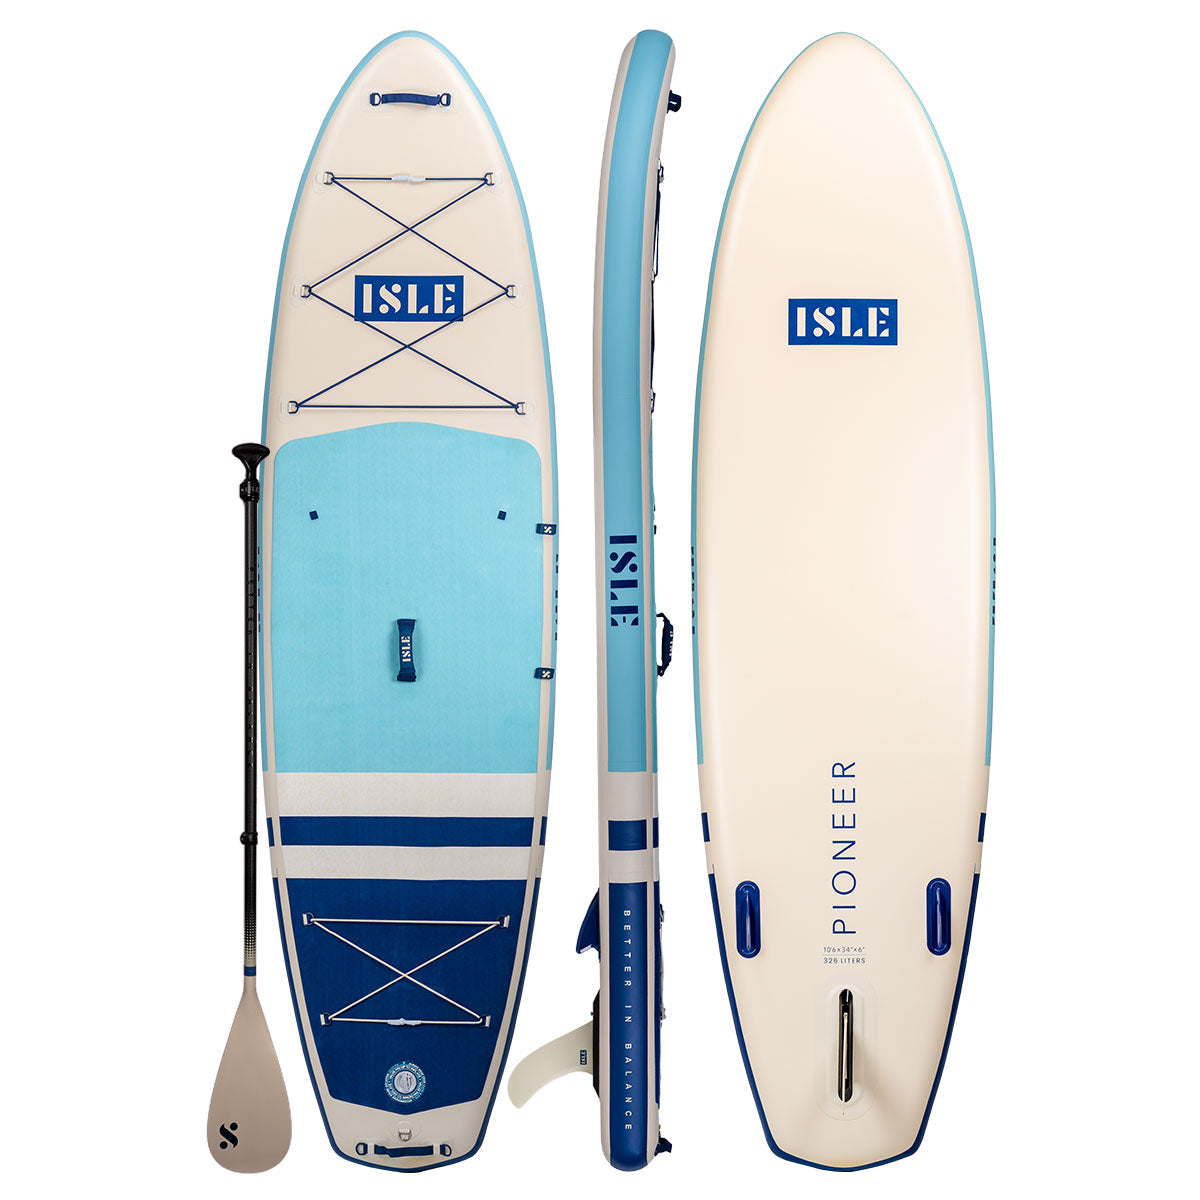 Explorer 2.0 | Inflatable Paddle | Boards Paddle ISLE | ISLE Board